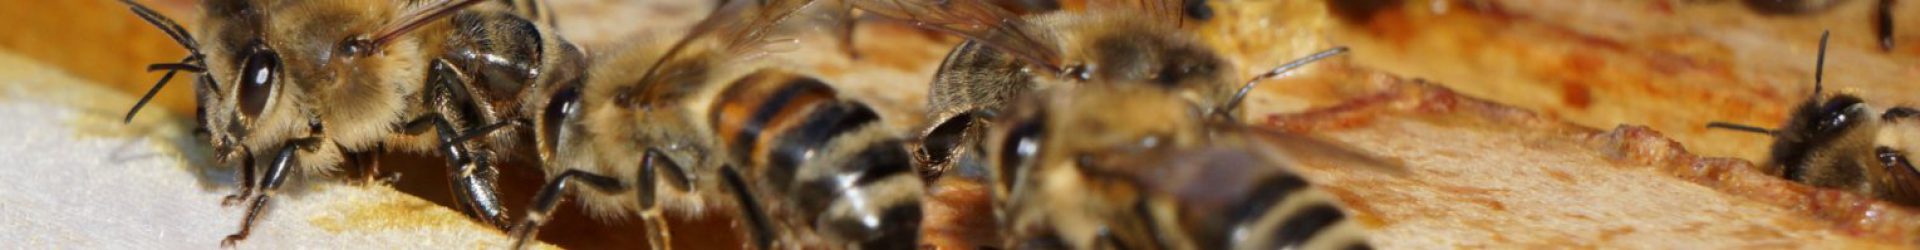 Bilanz der Imker: Bienen sind hungrig – infranken.de